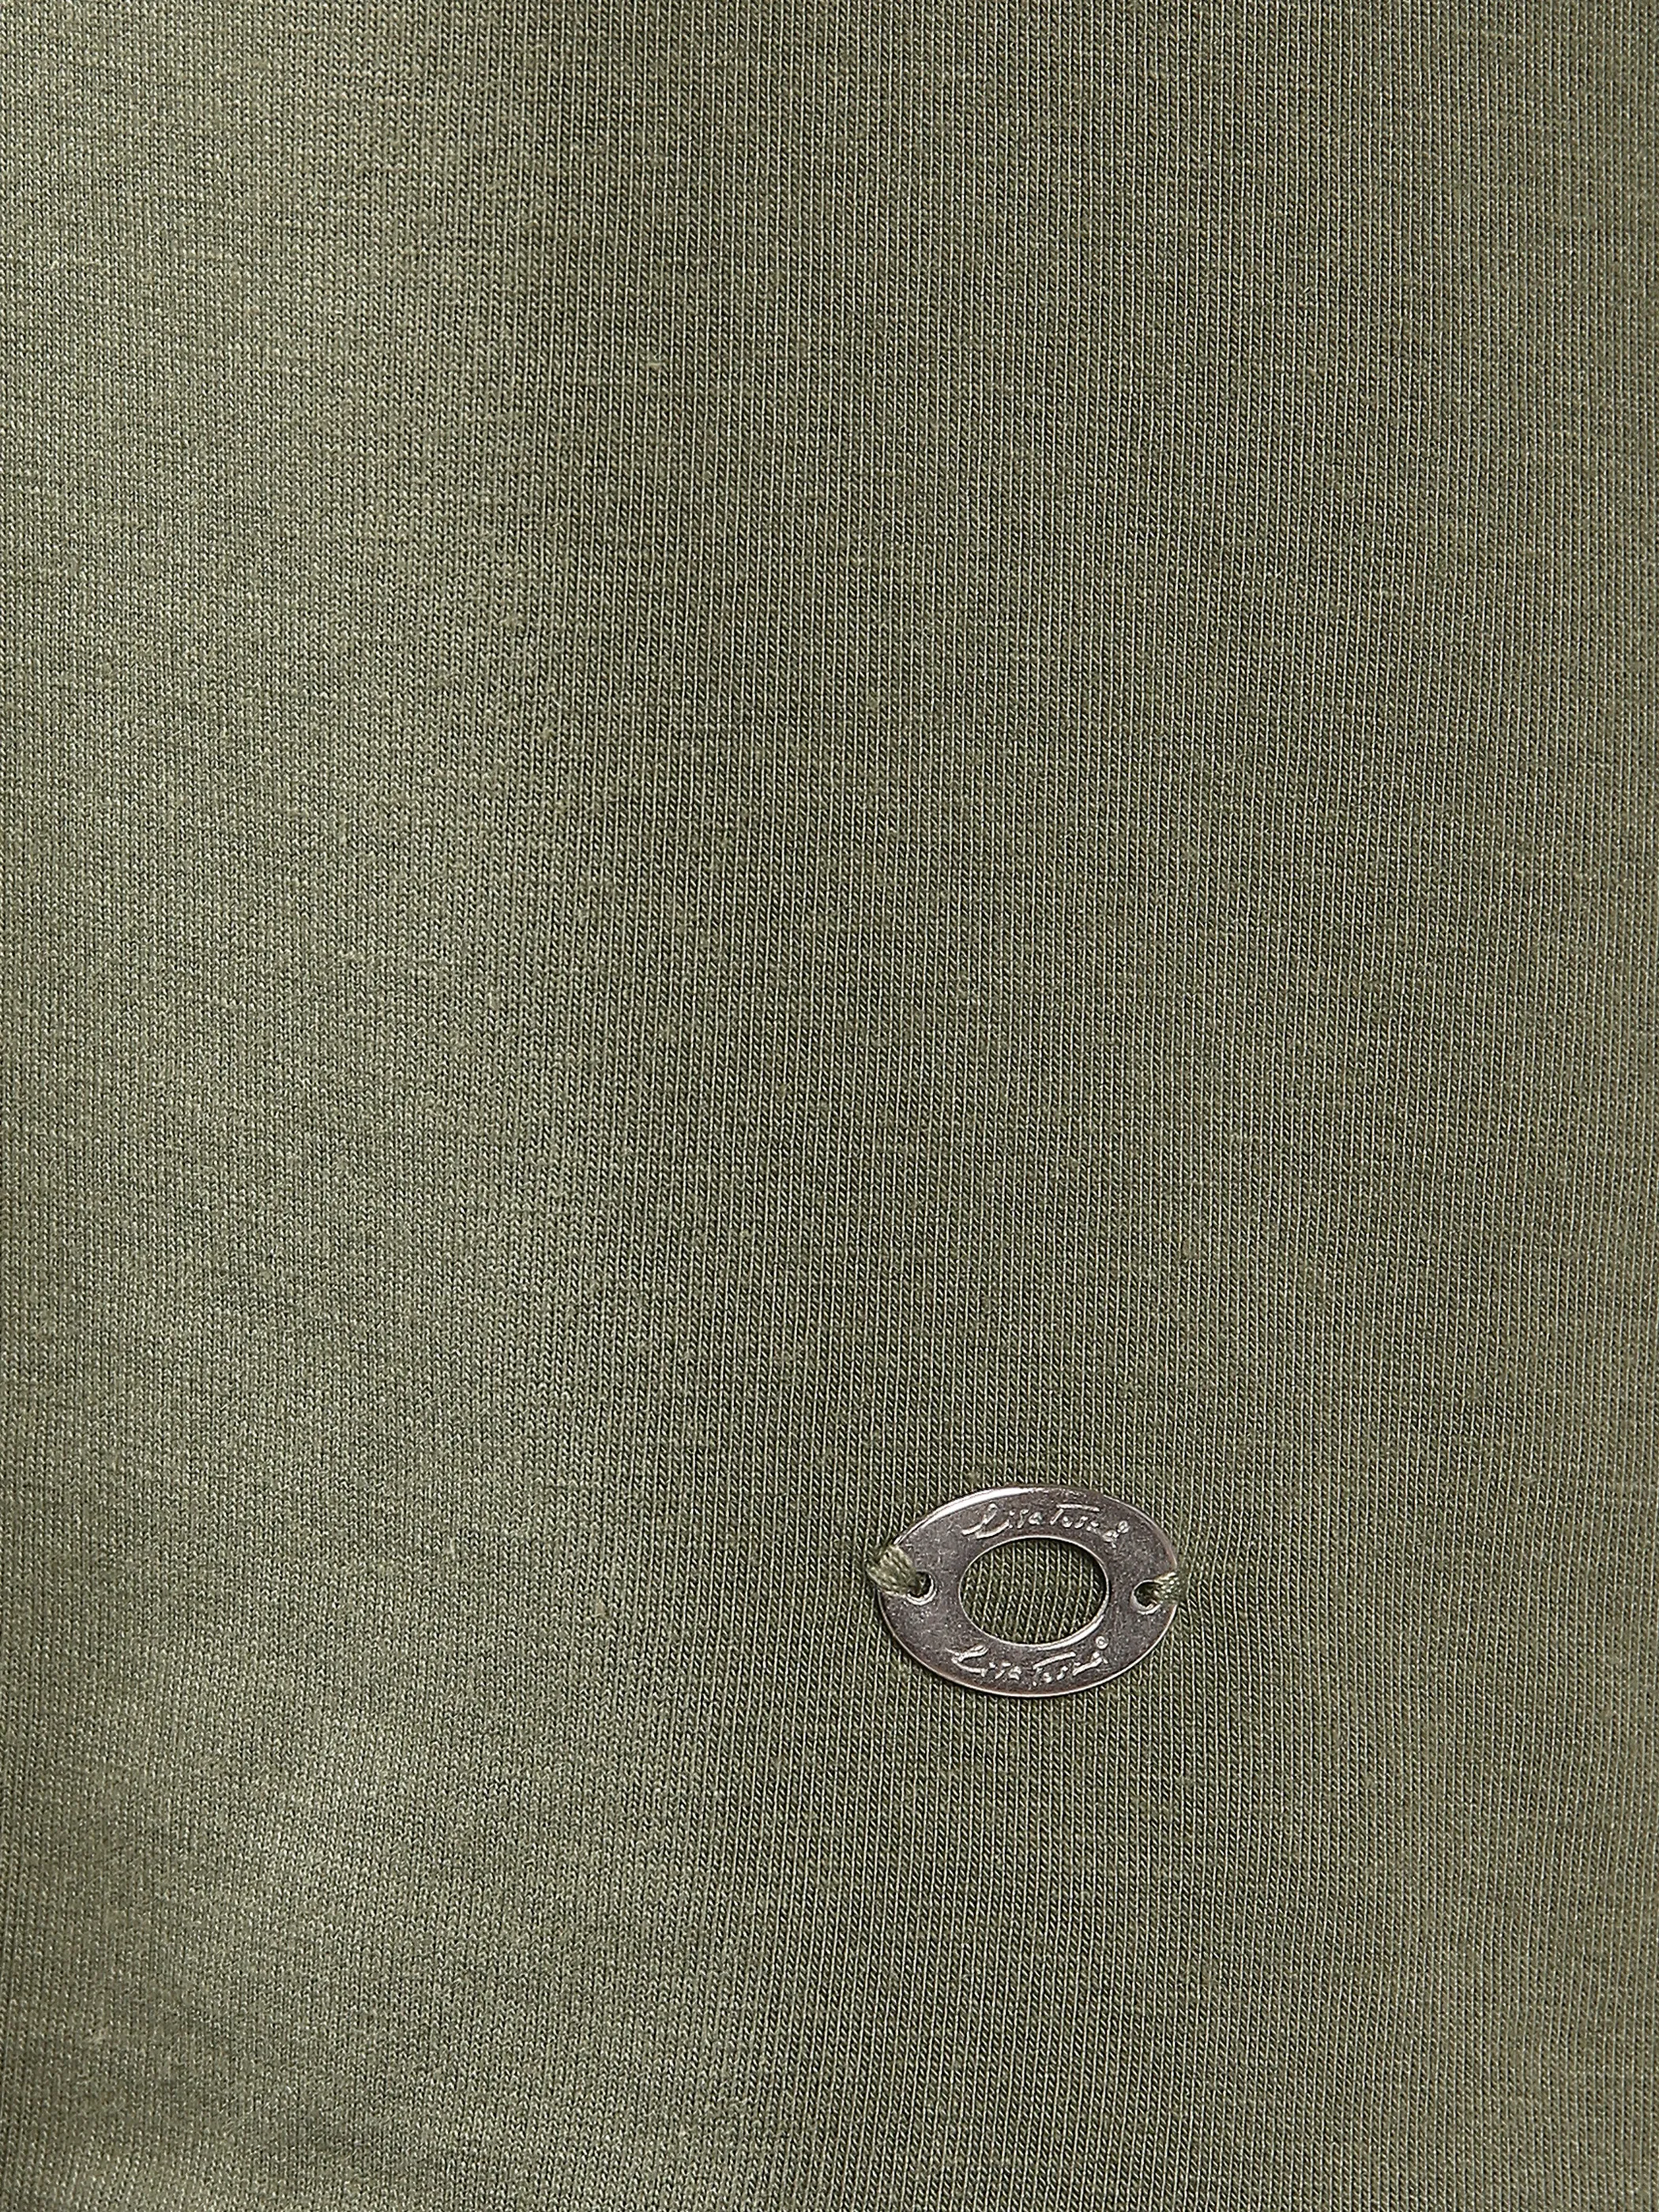 Lisa Tossa Da-Shirt 3/4 Arm V-Ausschnitt Grün 833115 OLIVE 3